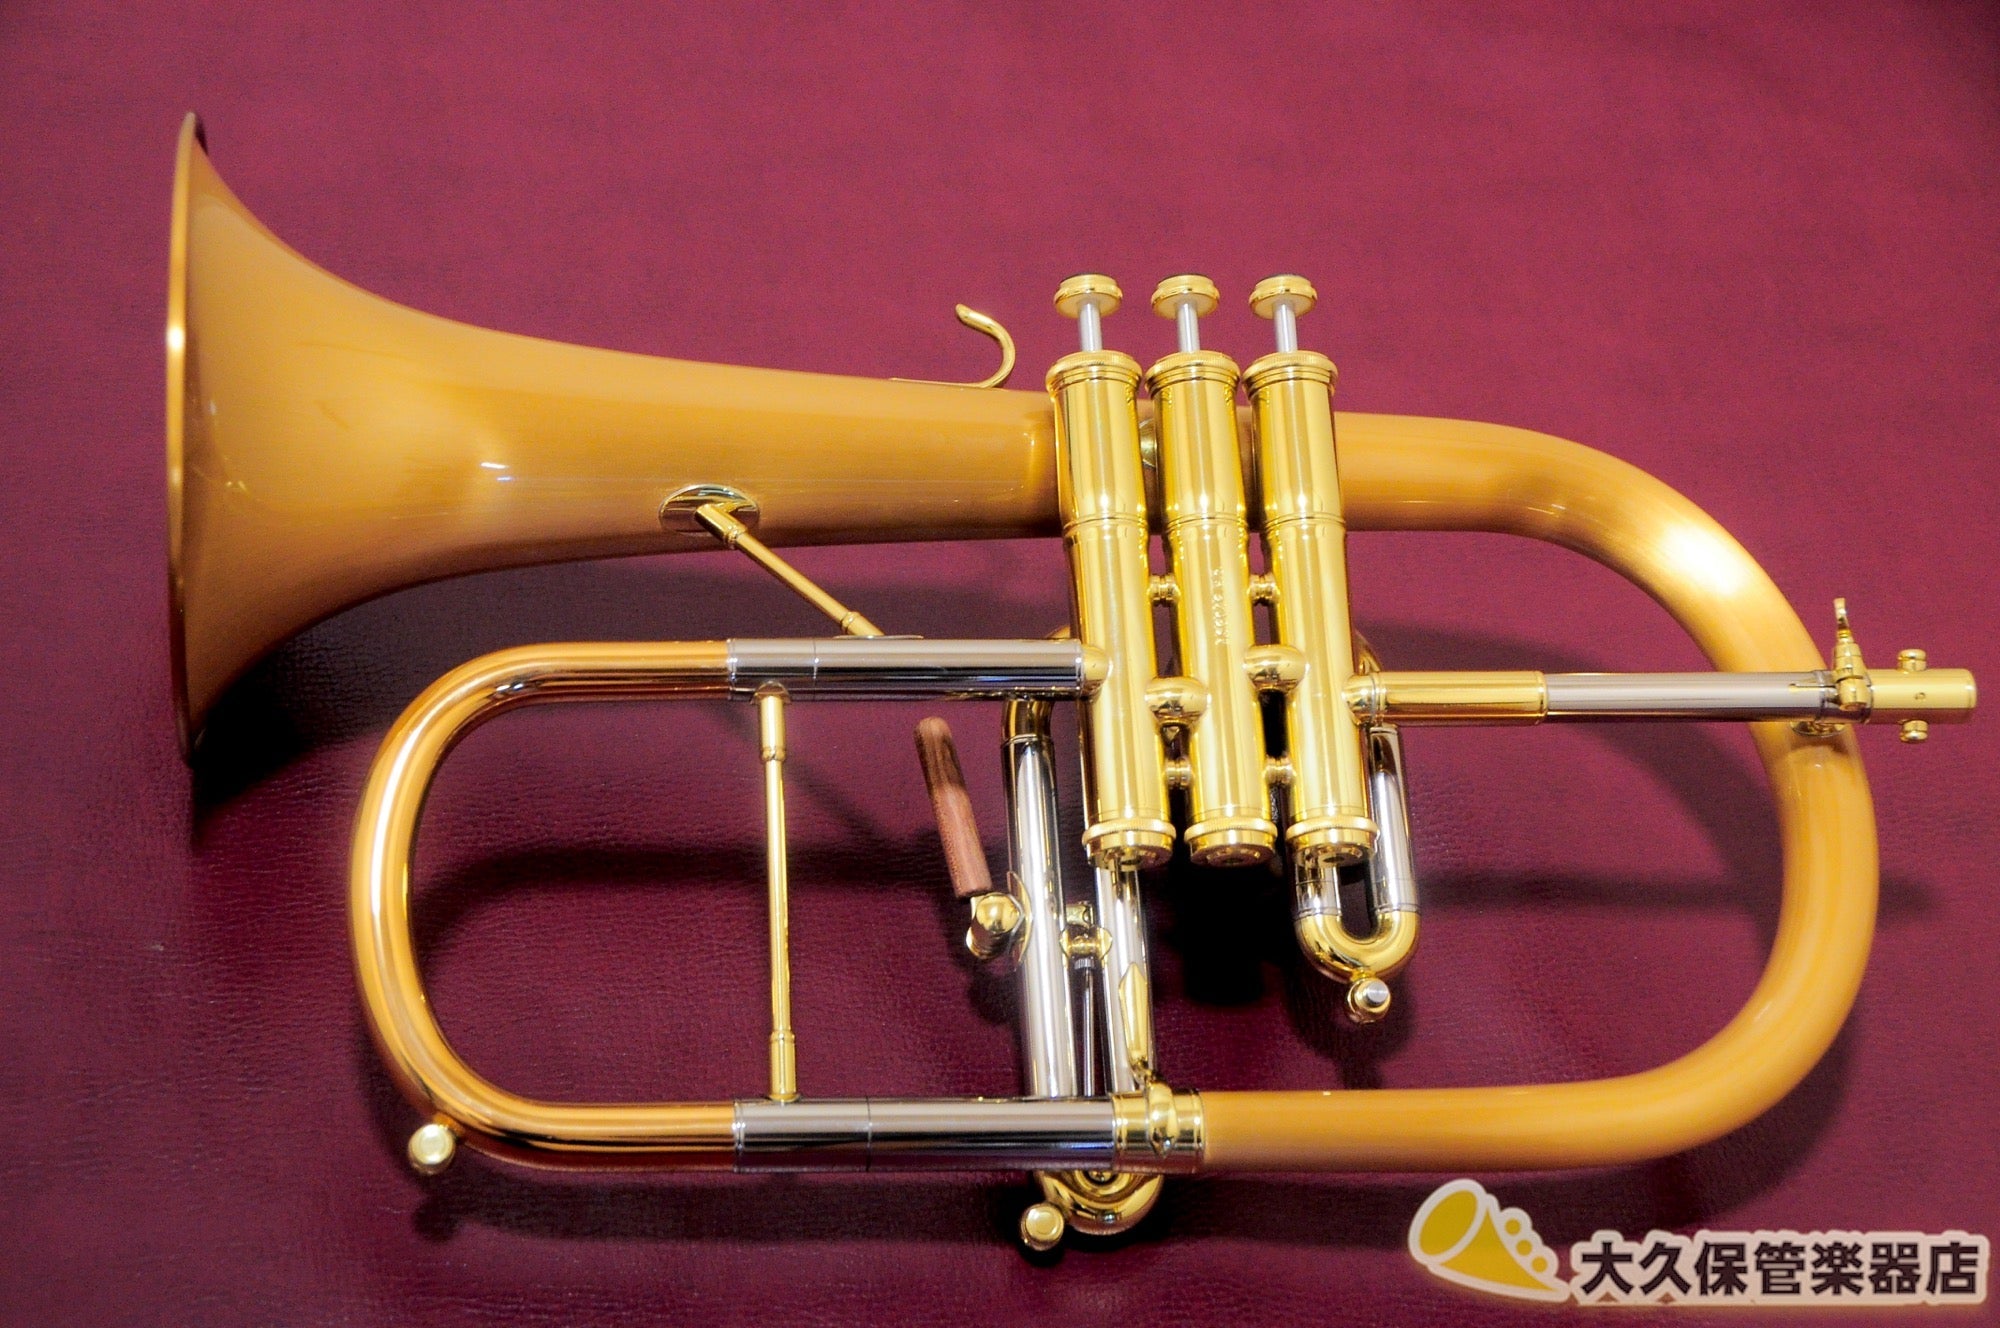 BLESSING フリューゲルホルン B-155 4バルブ - 管楽器